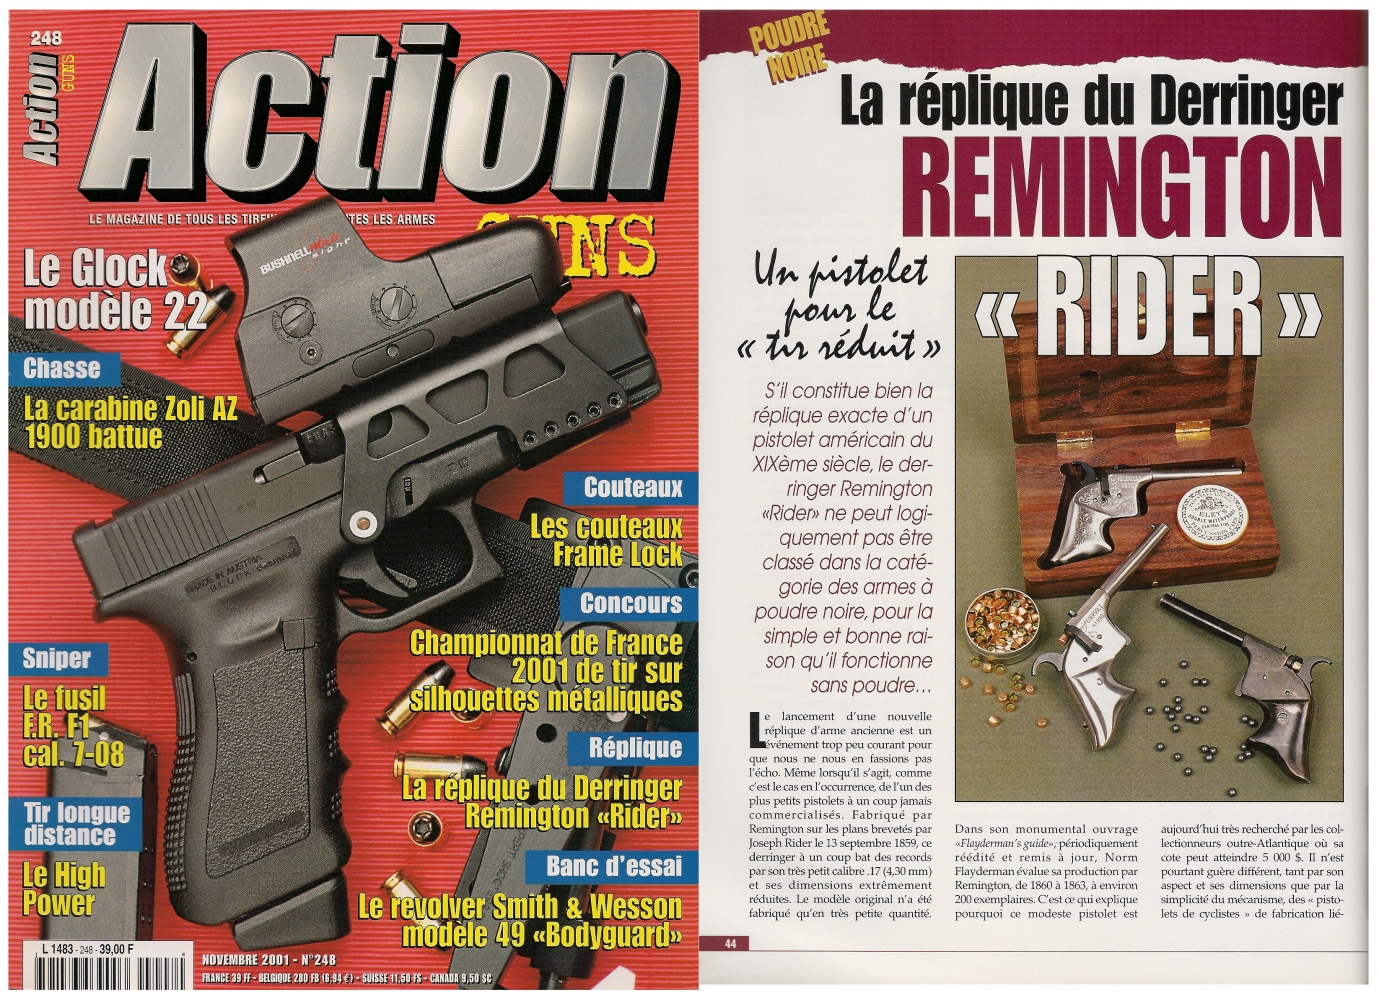 Le banc d’essai de la réplique du derringer Remington Rider a été publié sur 4 pages dans le magazine Action Guns n°248 (novembre 2001). 